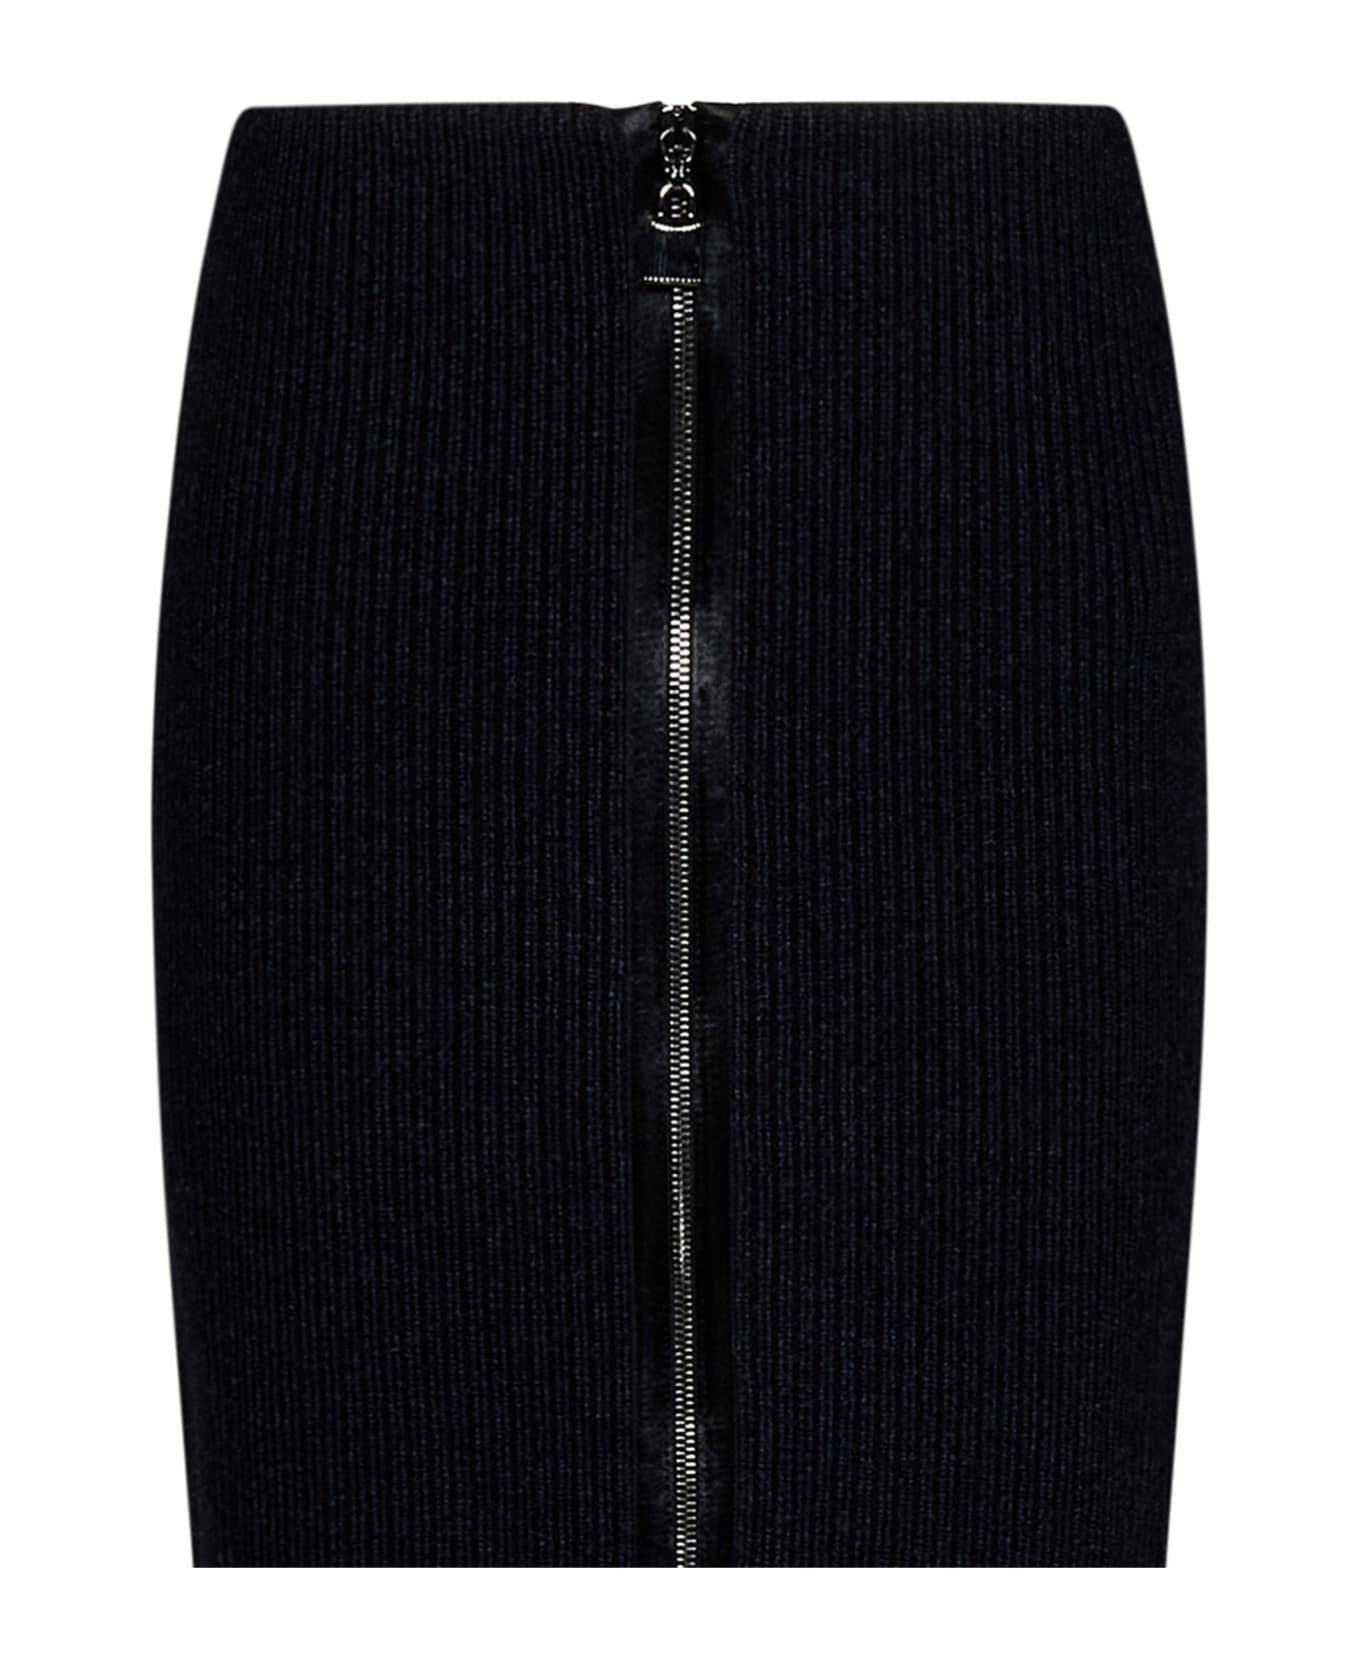 Tom Ford 5gg Skirt - Black スカート